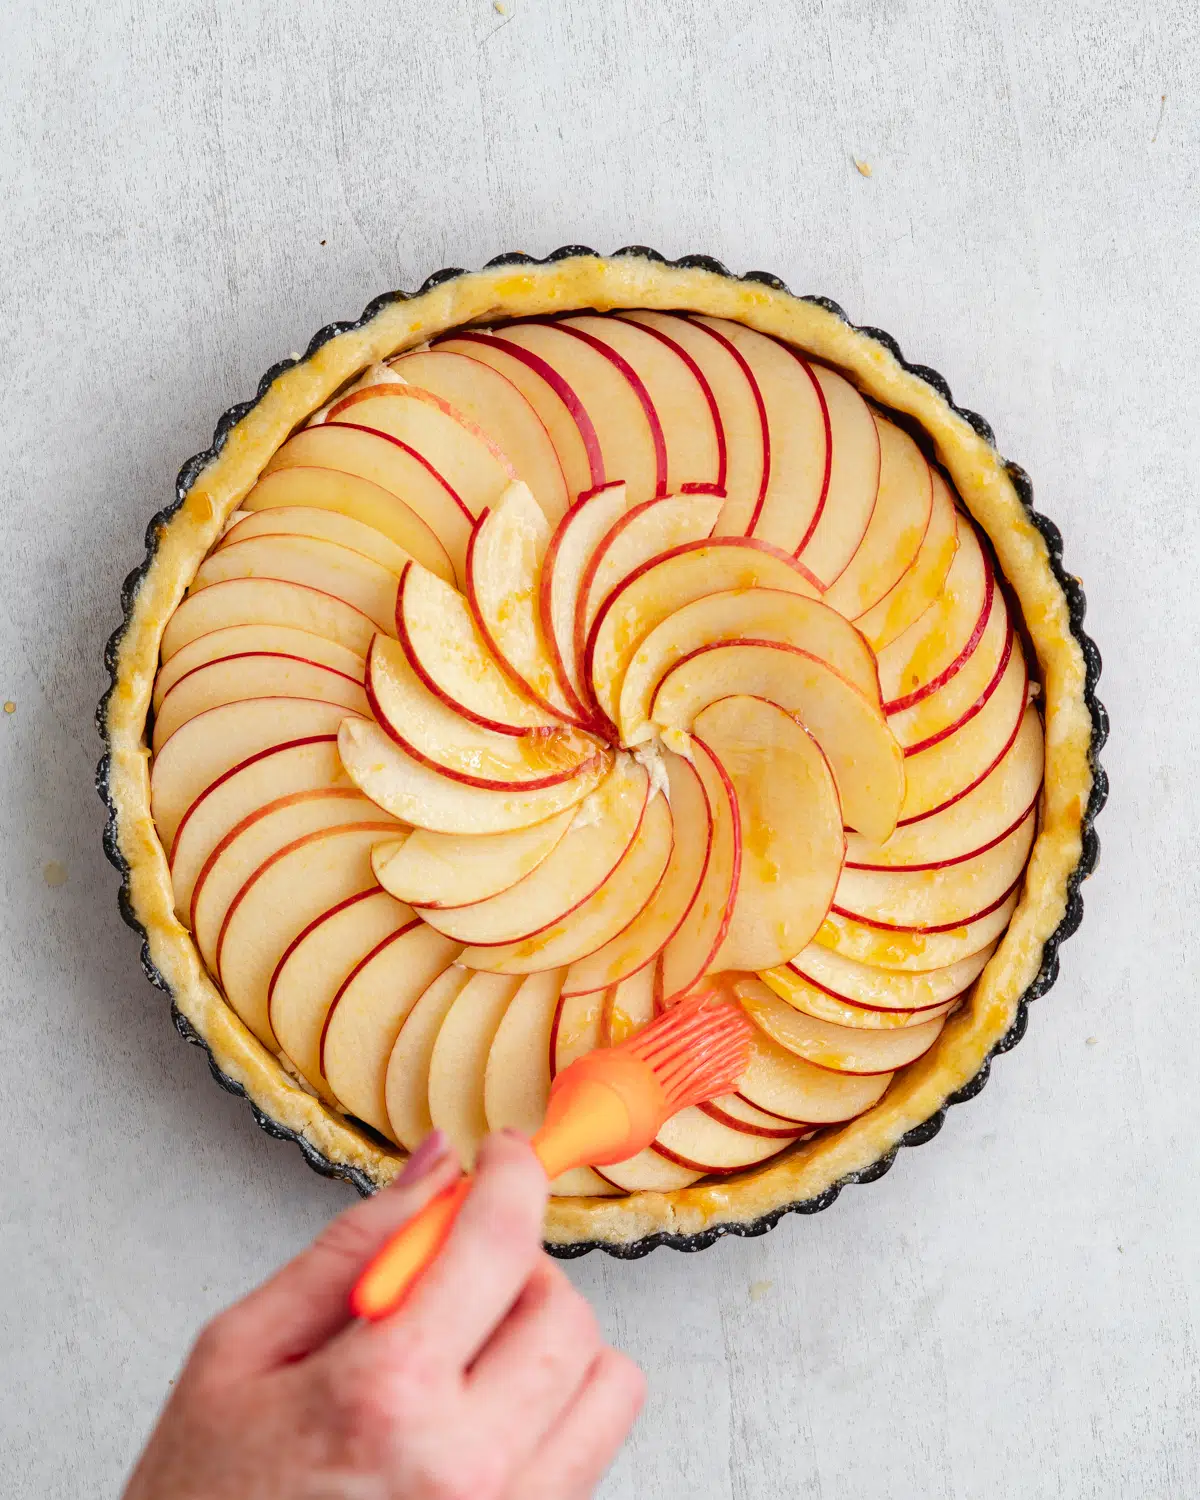 brushing apple tart with apricot glaze.